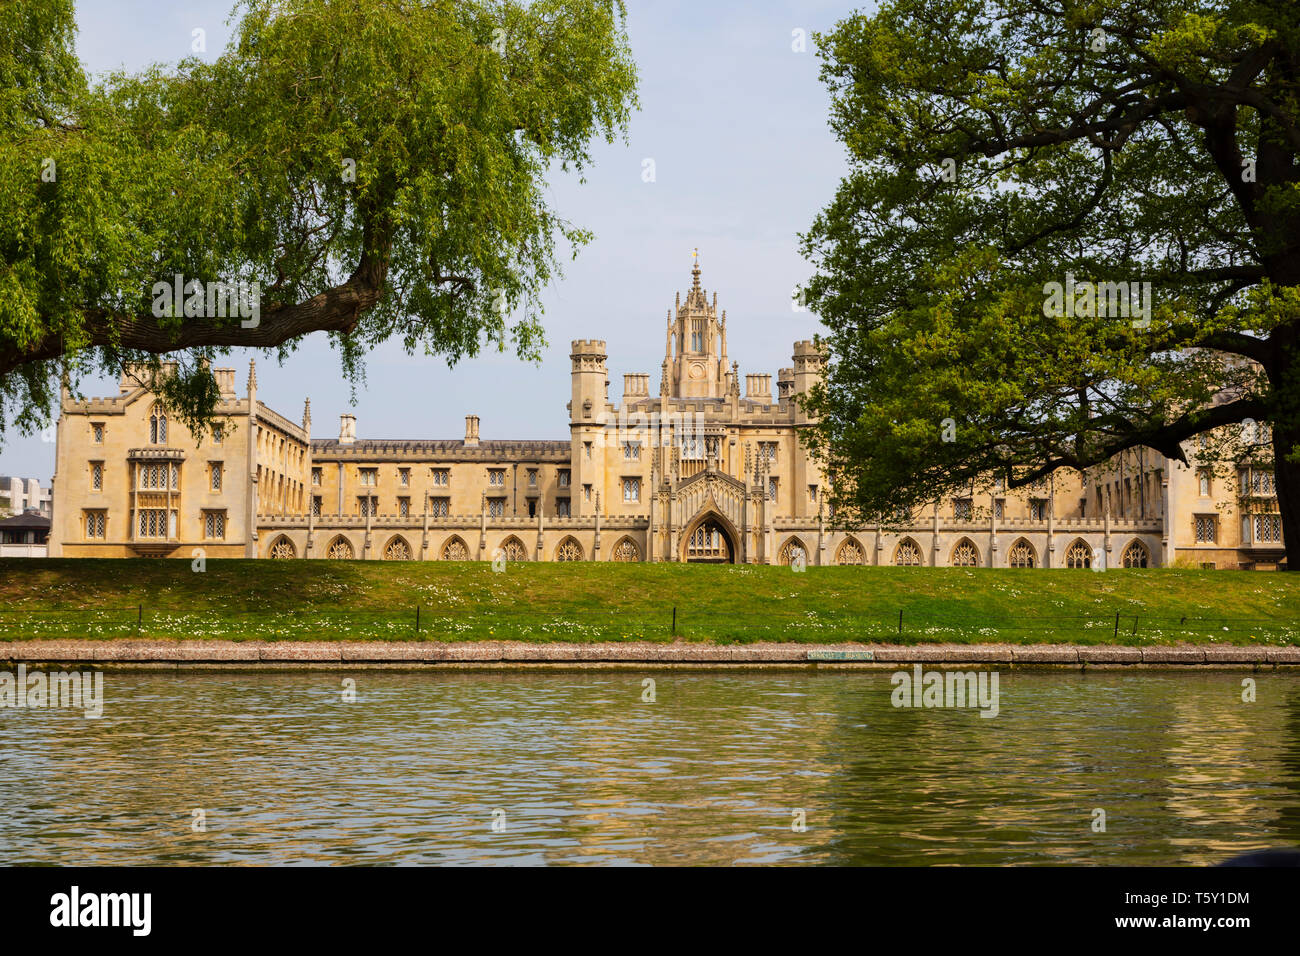 St Johns College visto desde el río Cam, ciudad universitaria de Cambridge, Cambridgeshire, Inglaterra Foto de stock